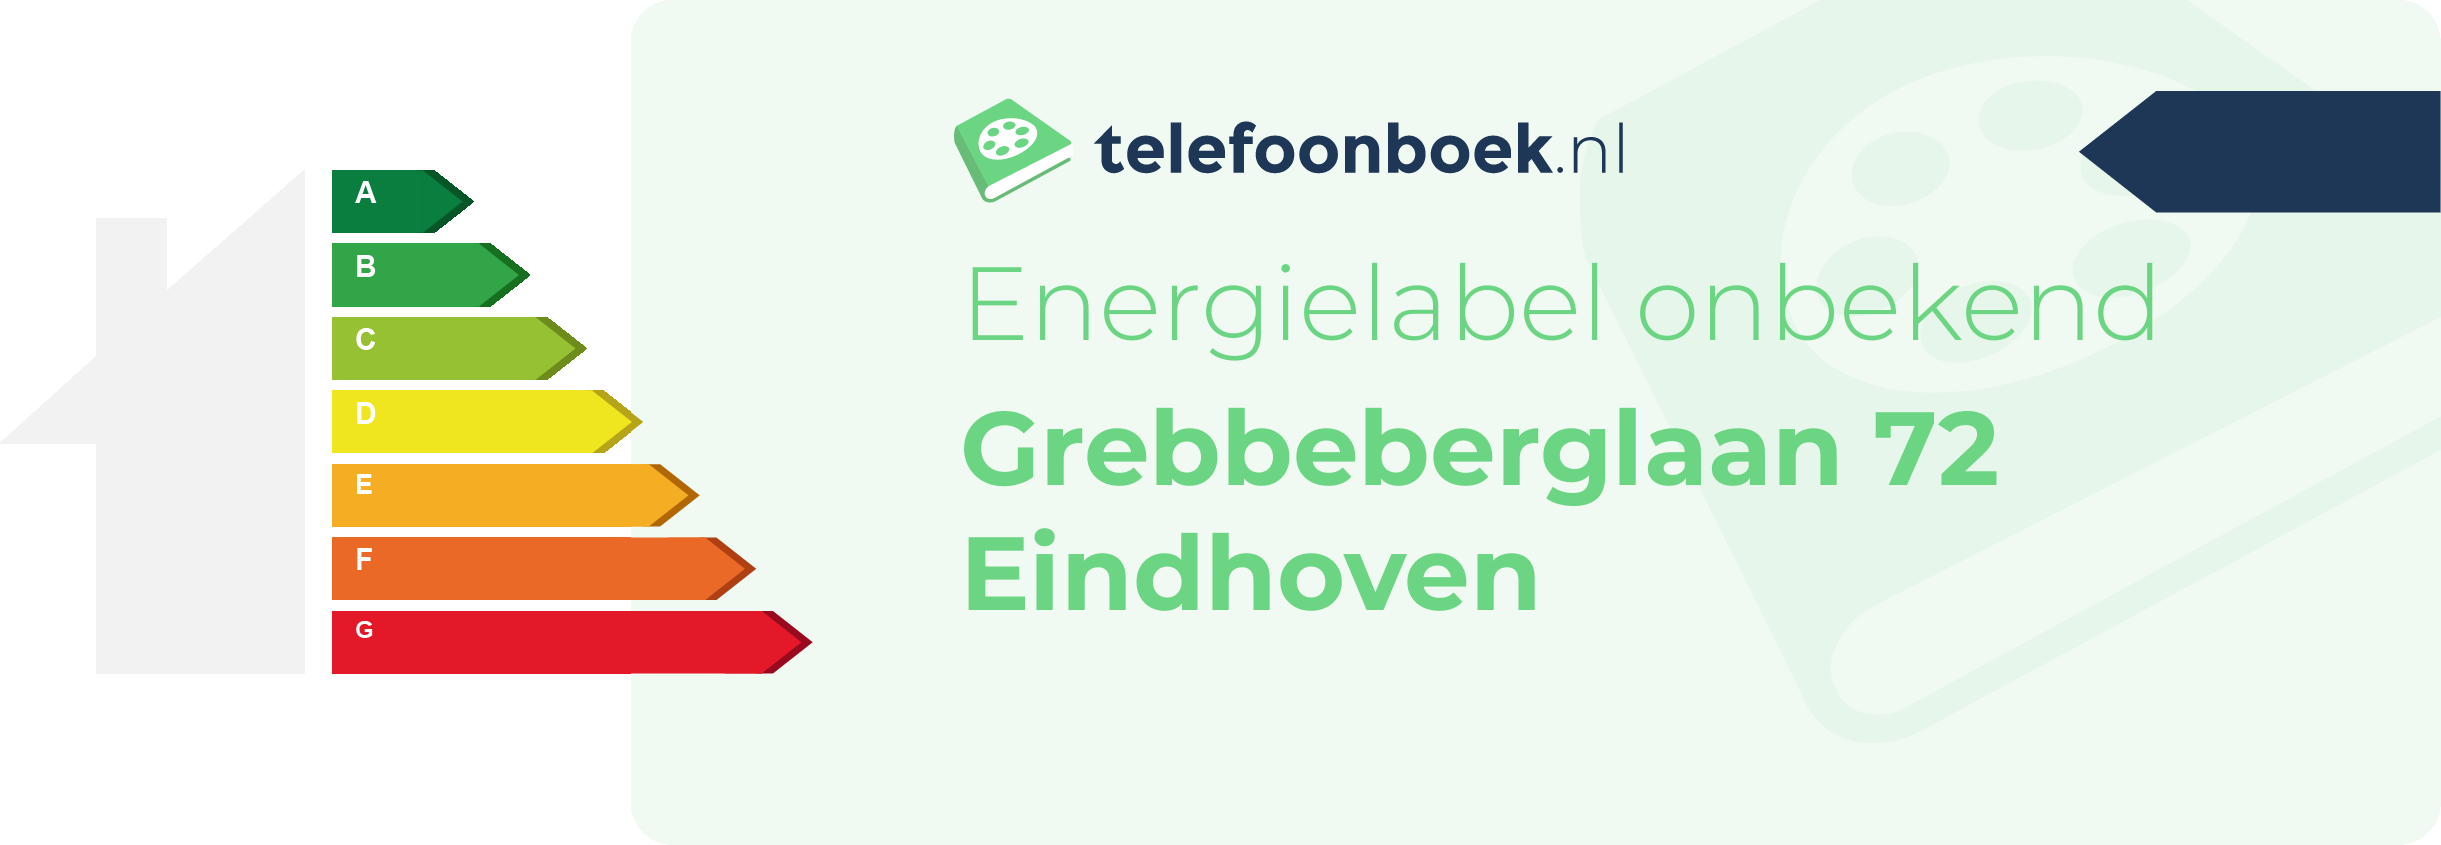 Energielabel Grebbeberglaan 72 Eindhoven